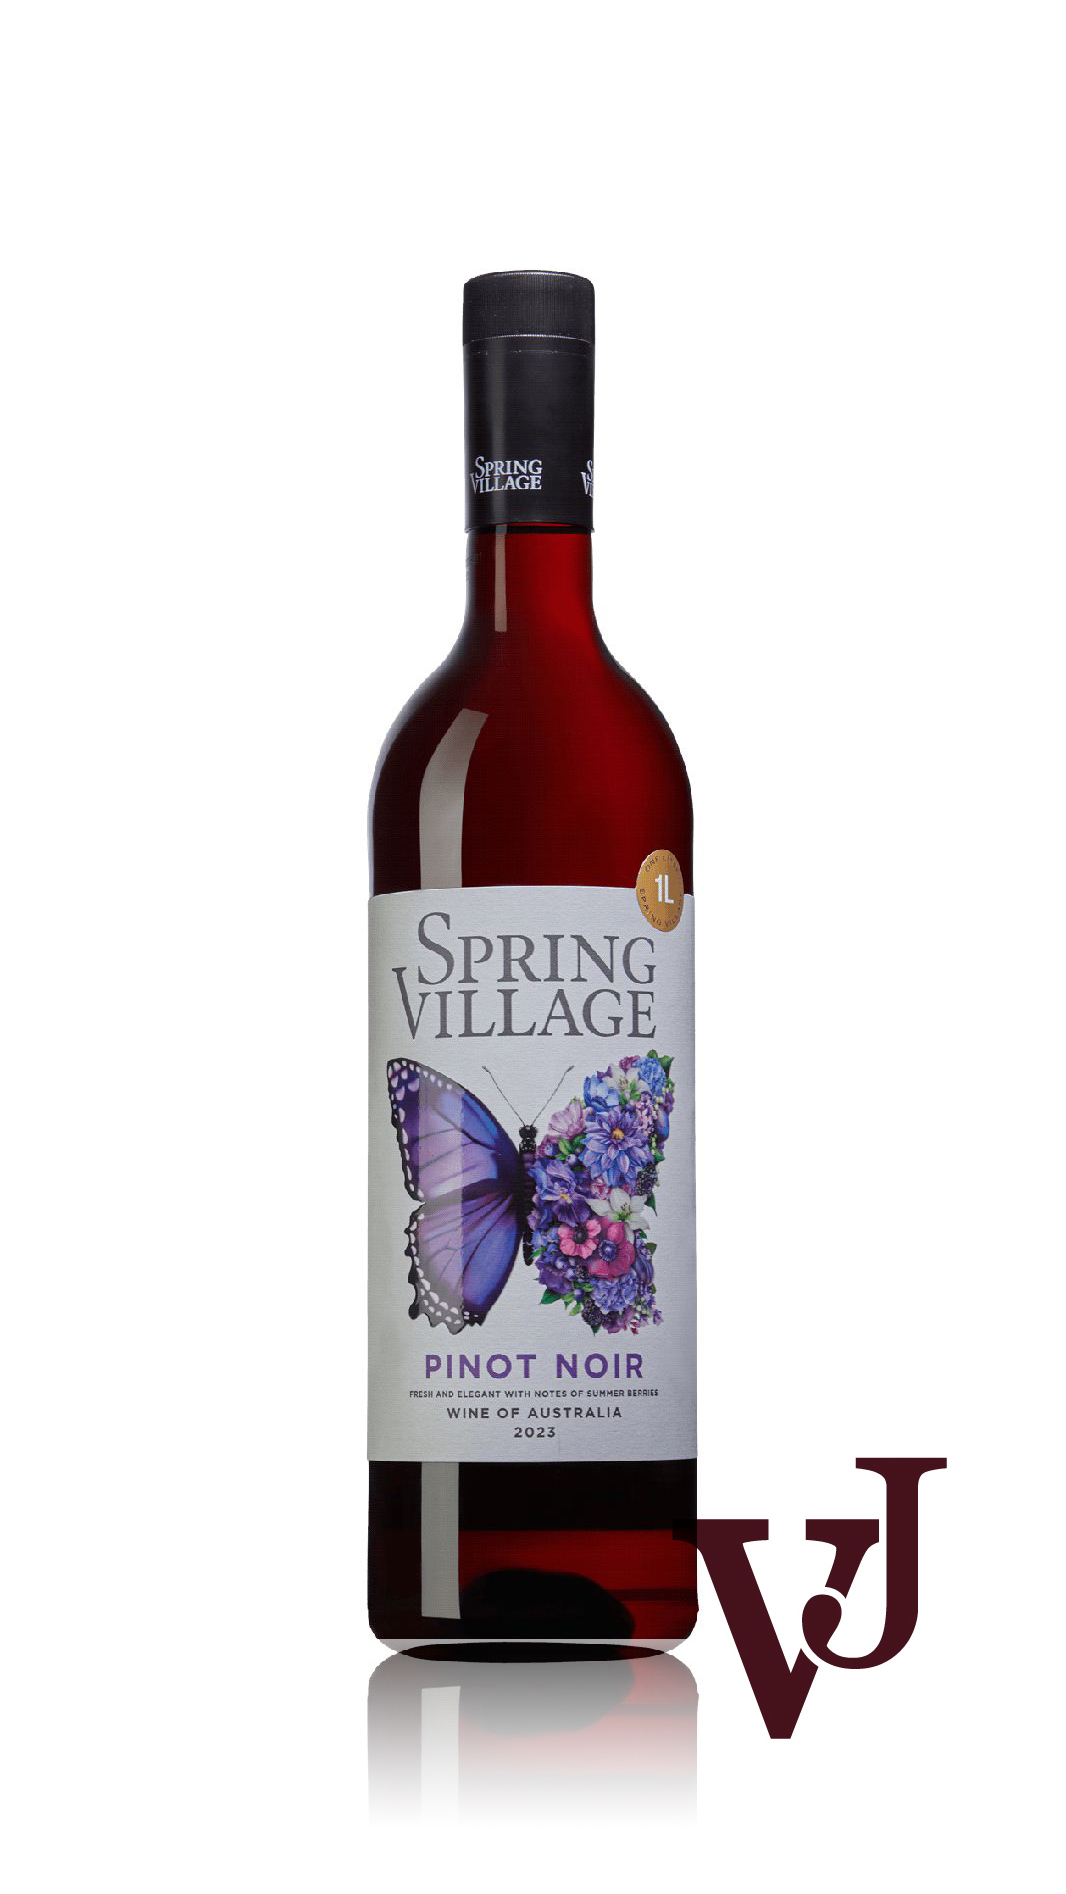 Rött Vin - Spring Village Pinot Noir 2023 artikel nummer 276221 från producenten Spring Wine & Spirits från området Australien